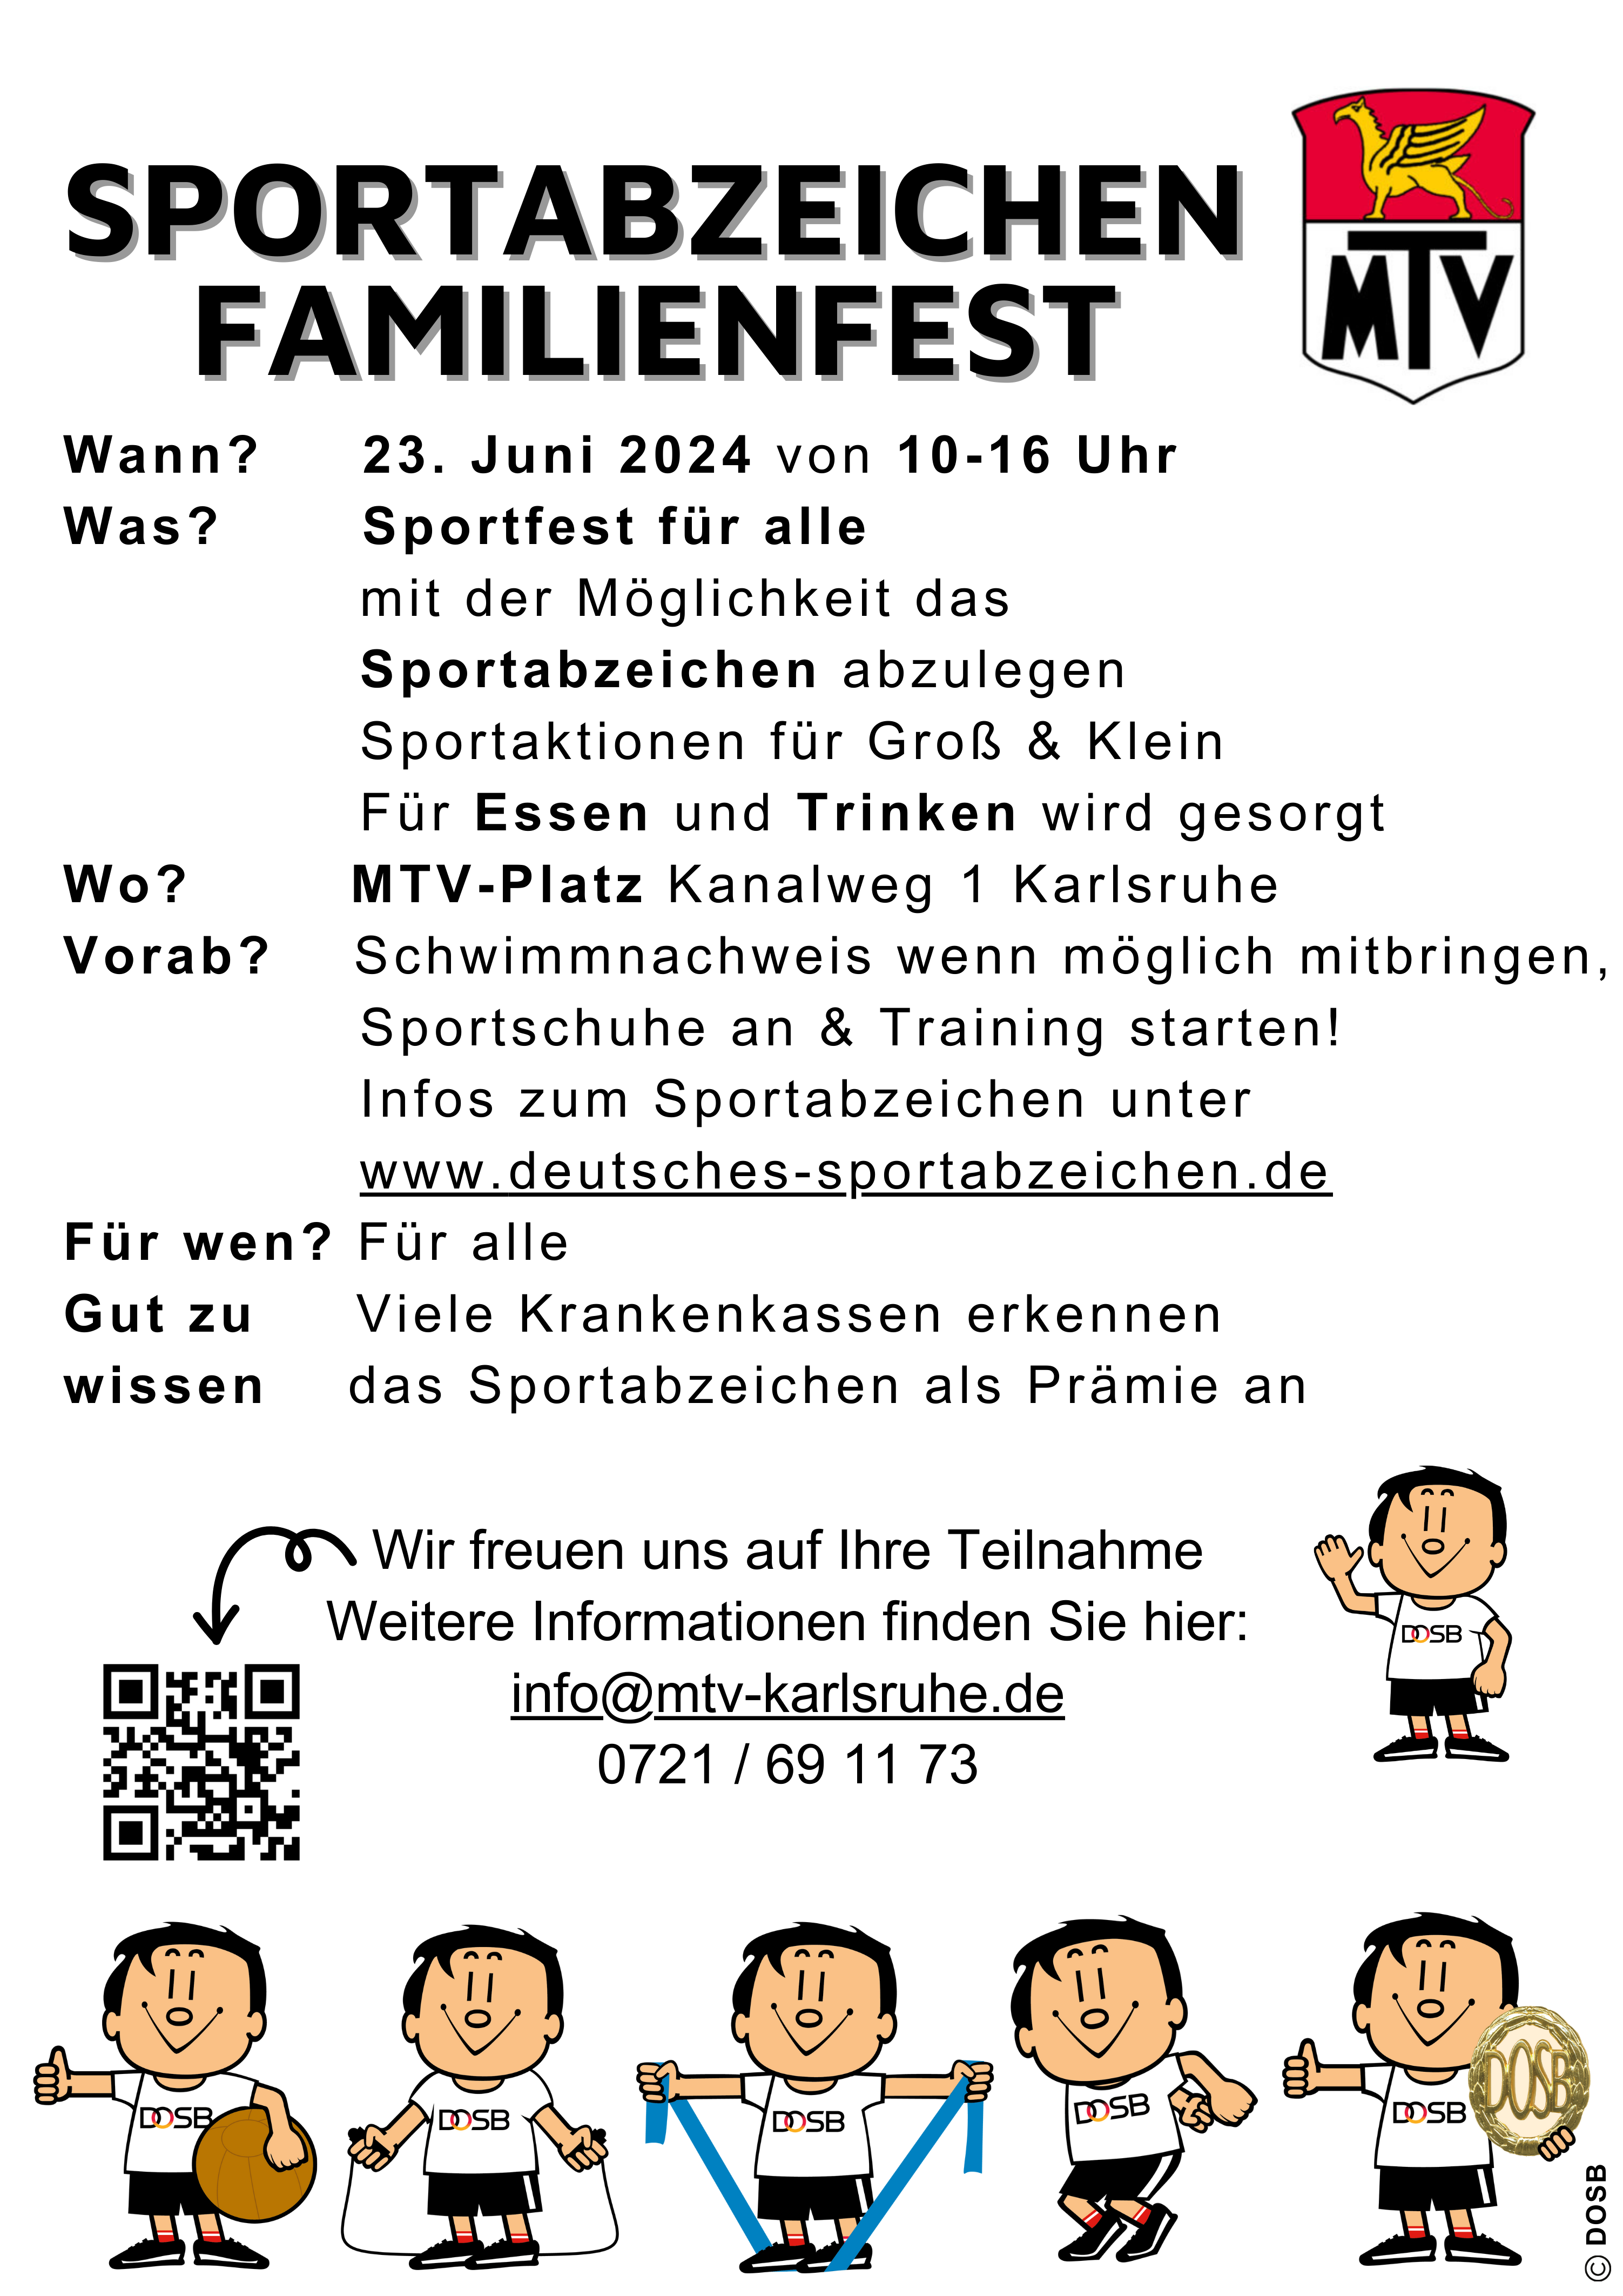 Sportabzeichenfamilienfest | MTV Karlsruhe